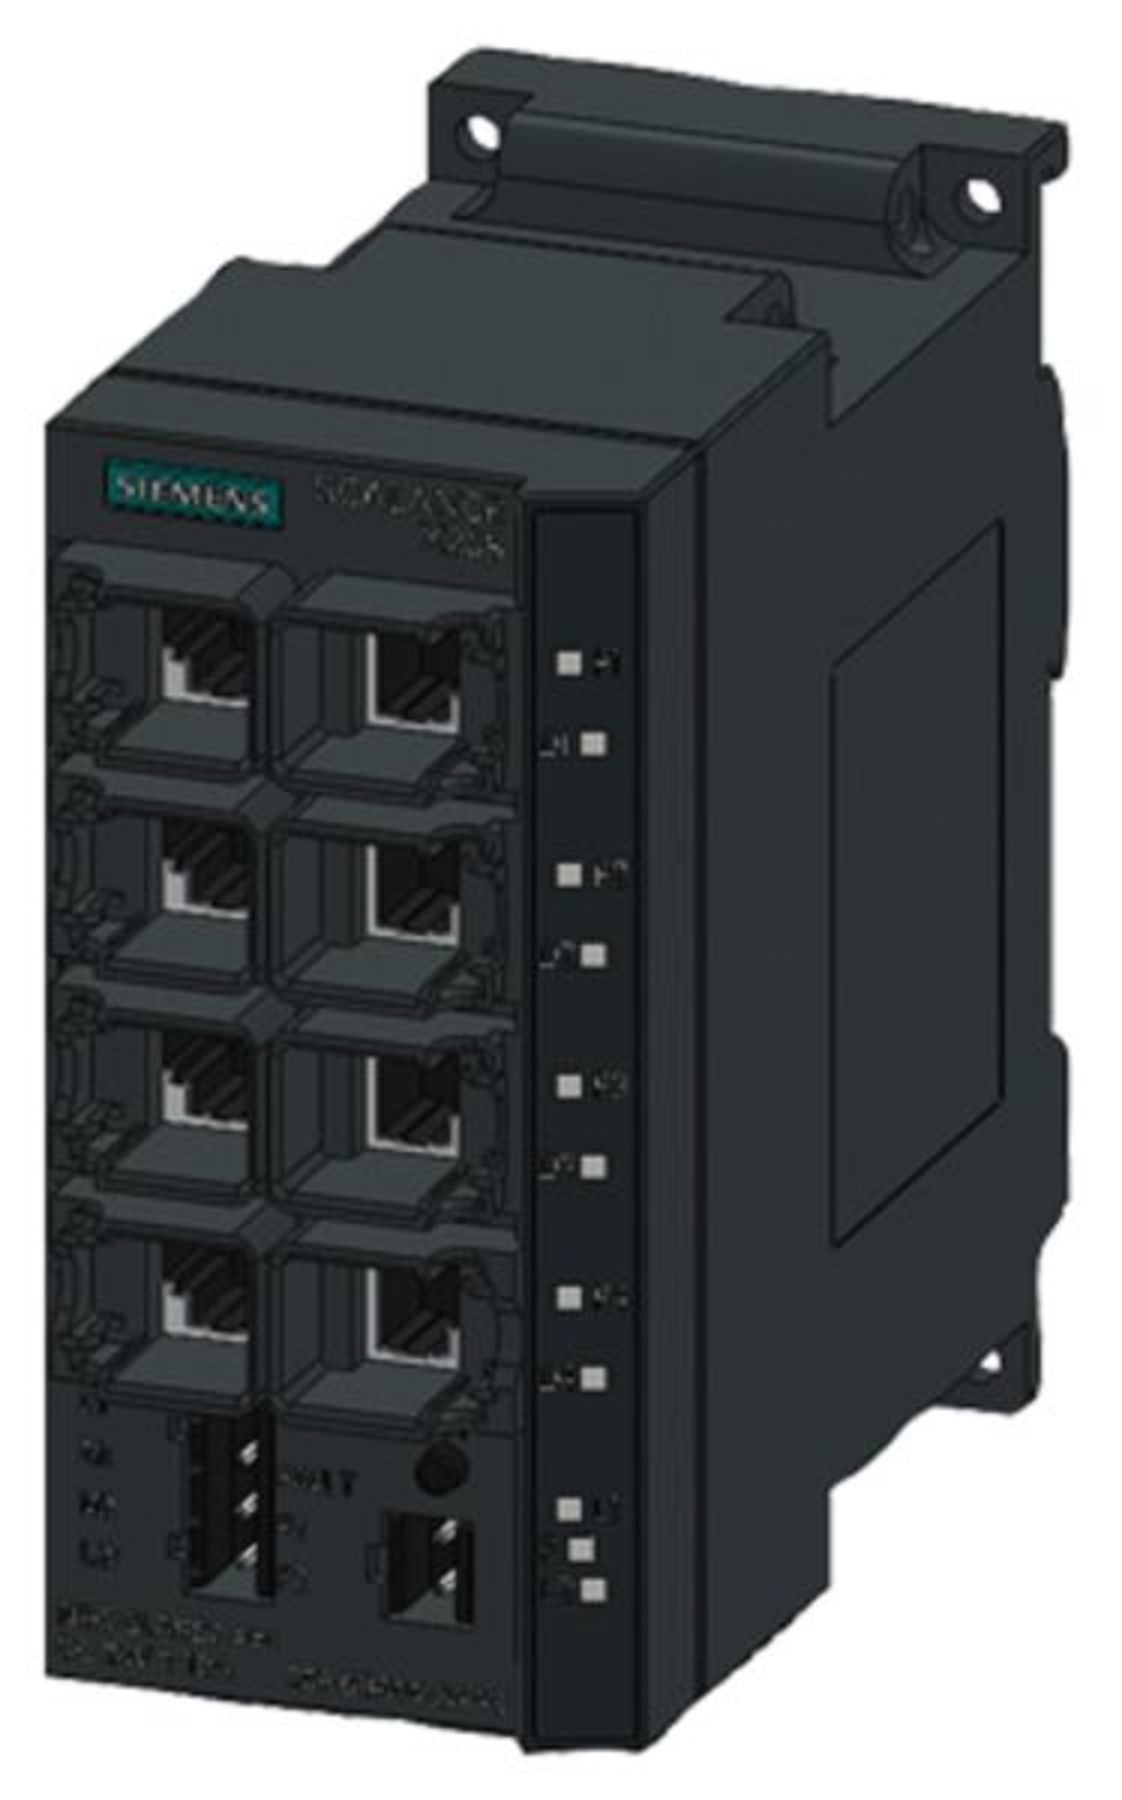 Stecker  ! A1 6GK5208-0BA00-2AA3 Siemens Ethernet Switch Scalance X208 